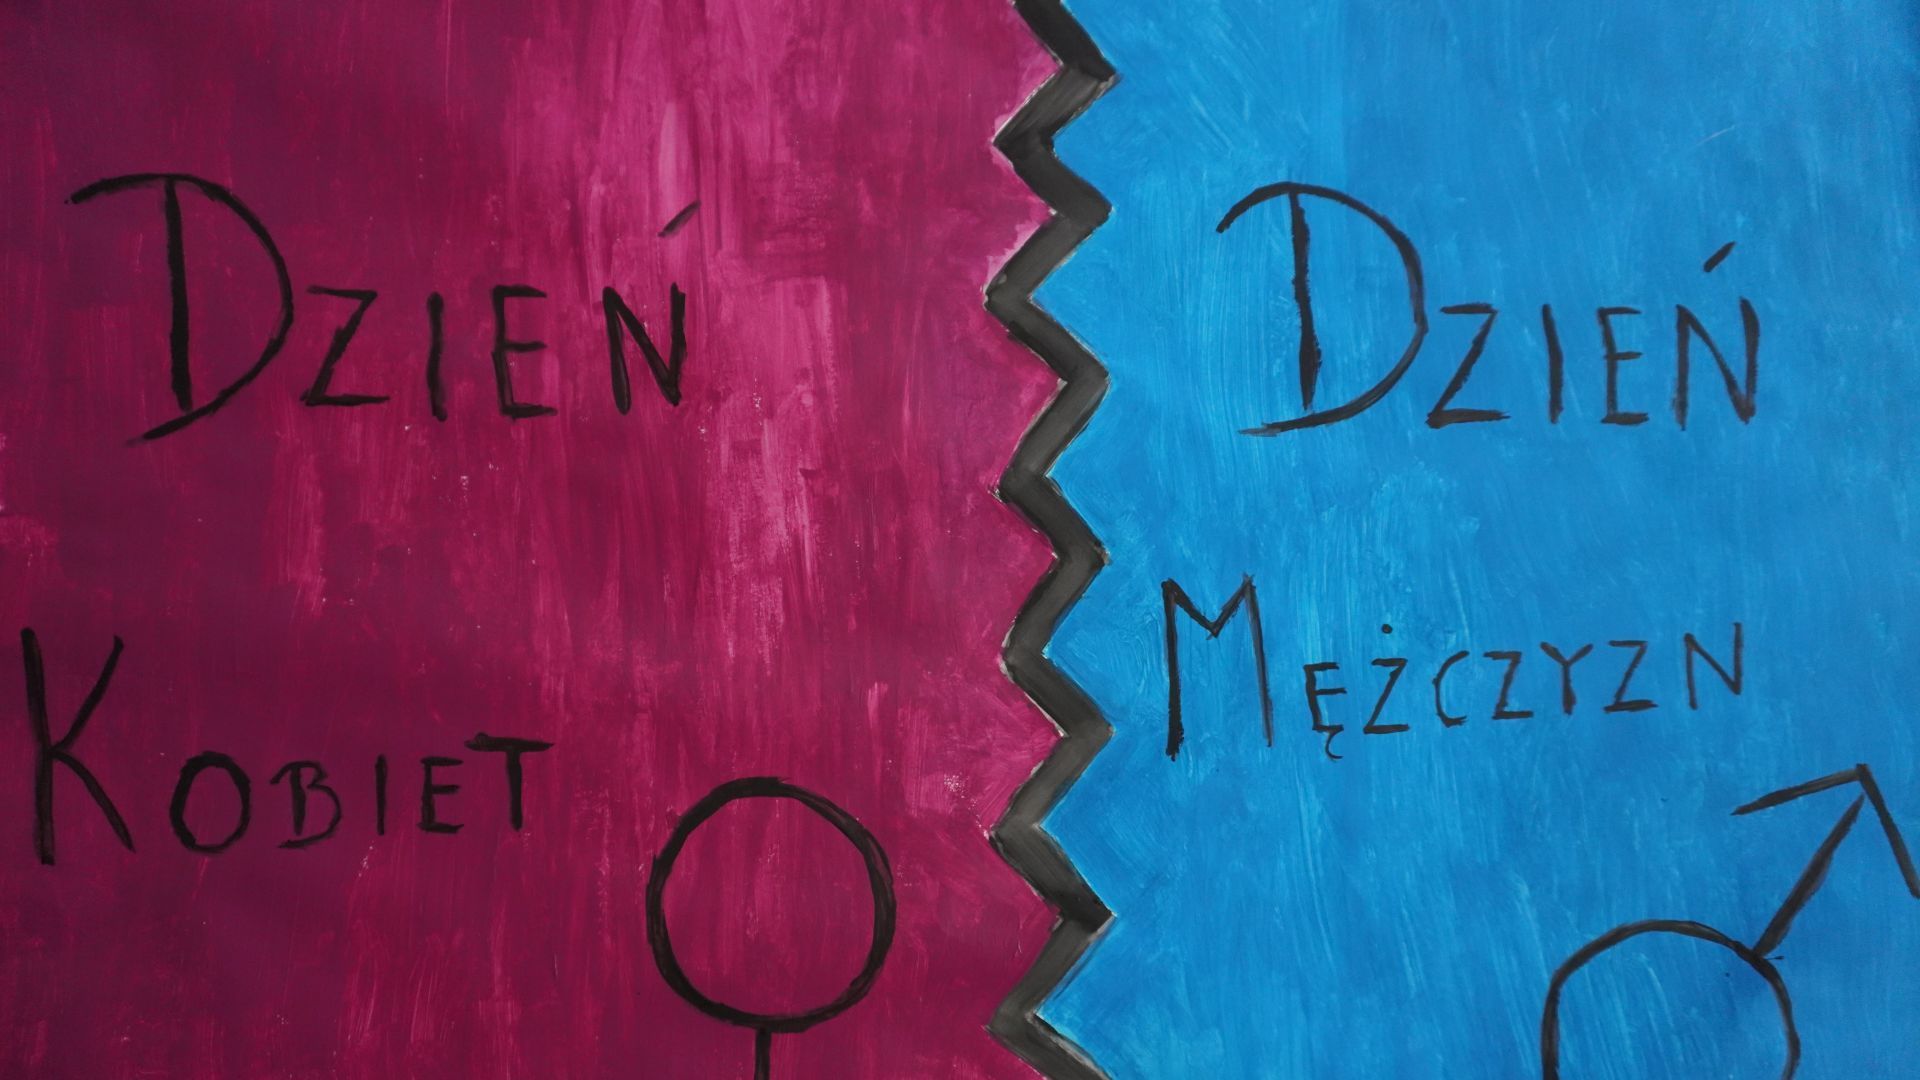 Plakat przedstawiający napis Dzień Kobiet i Dzień Mężczyzn na różowo-niebieskim tle.